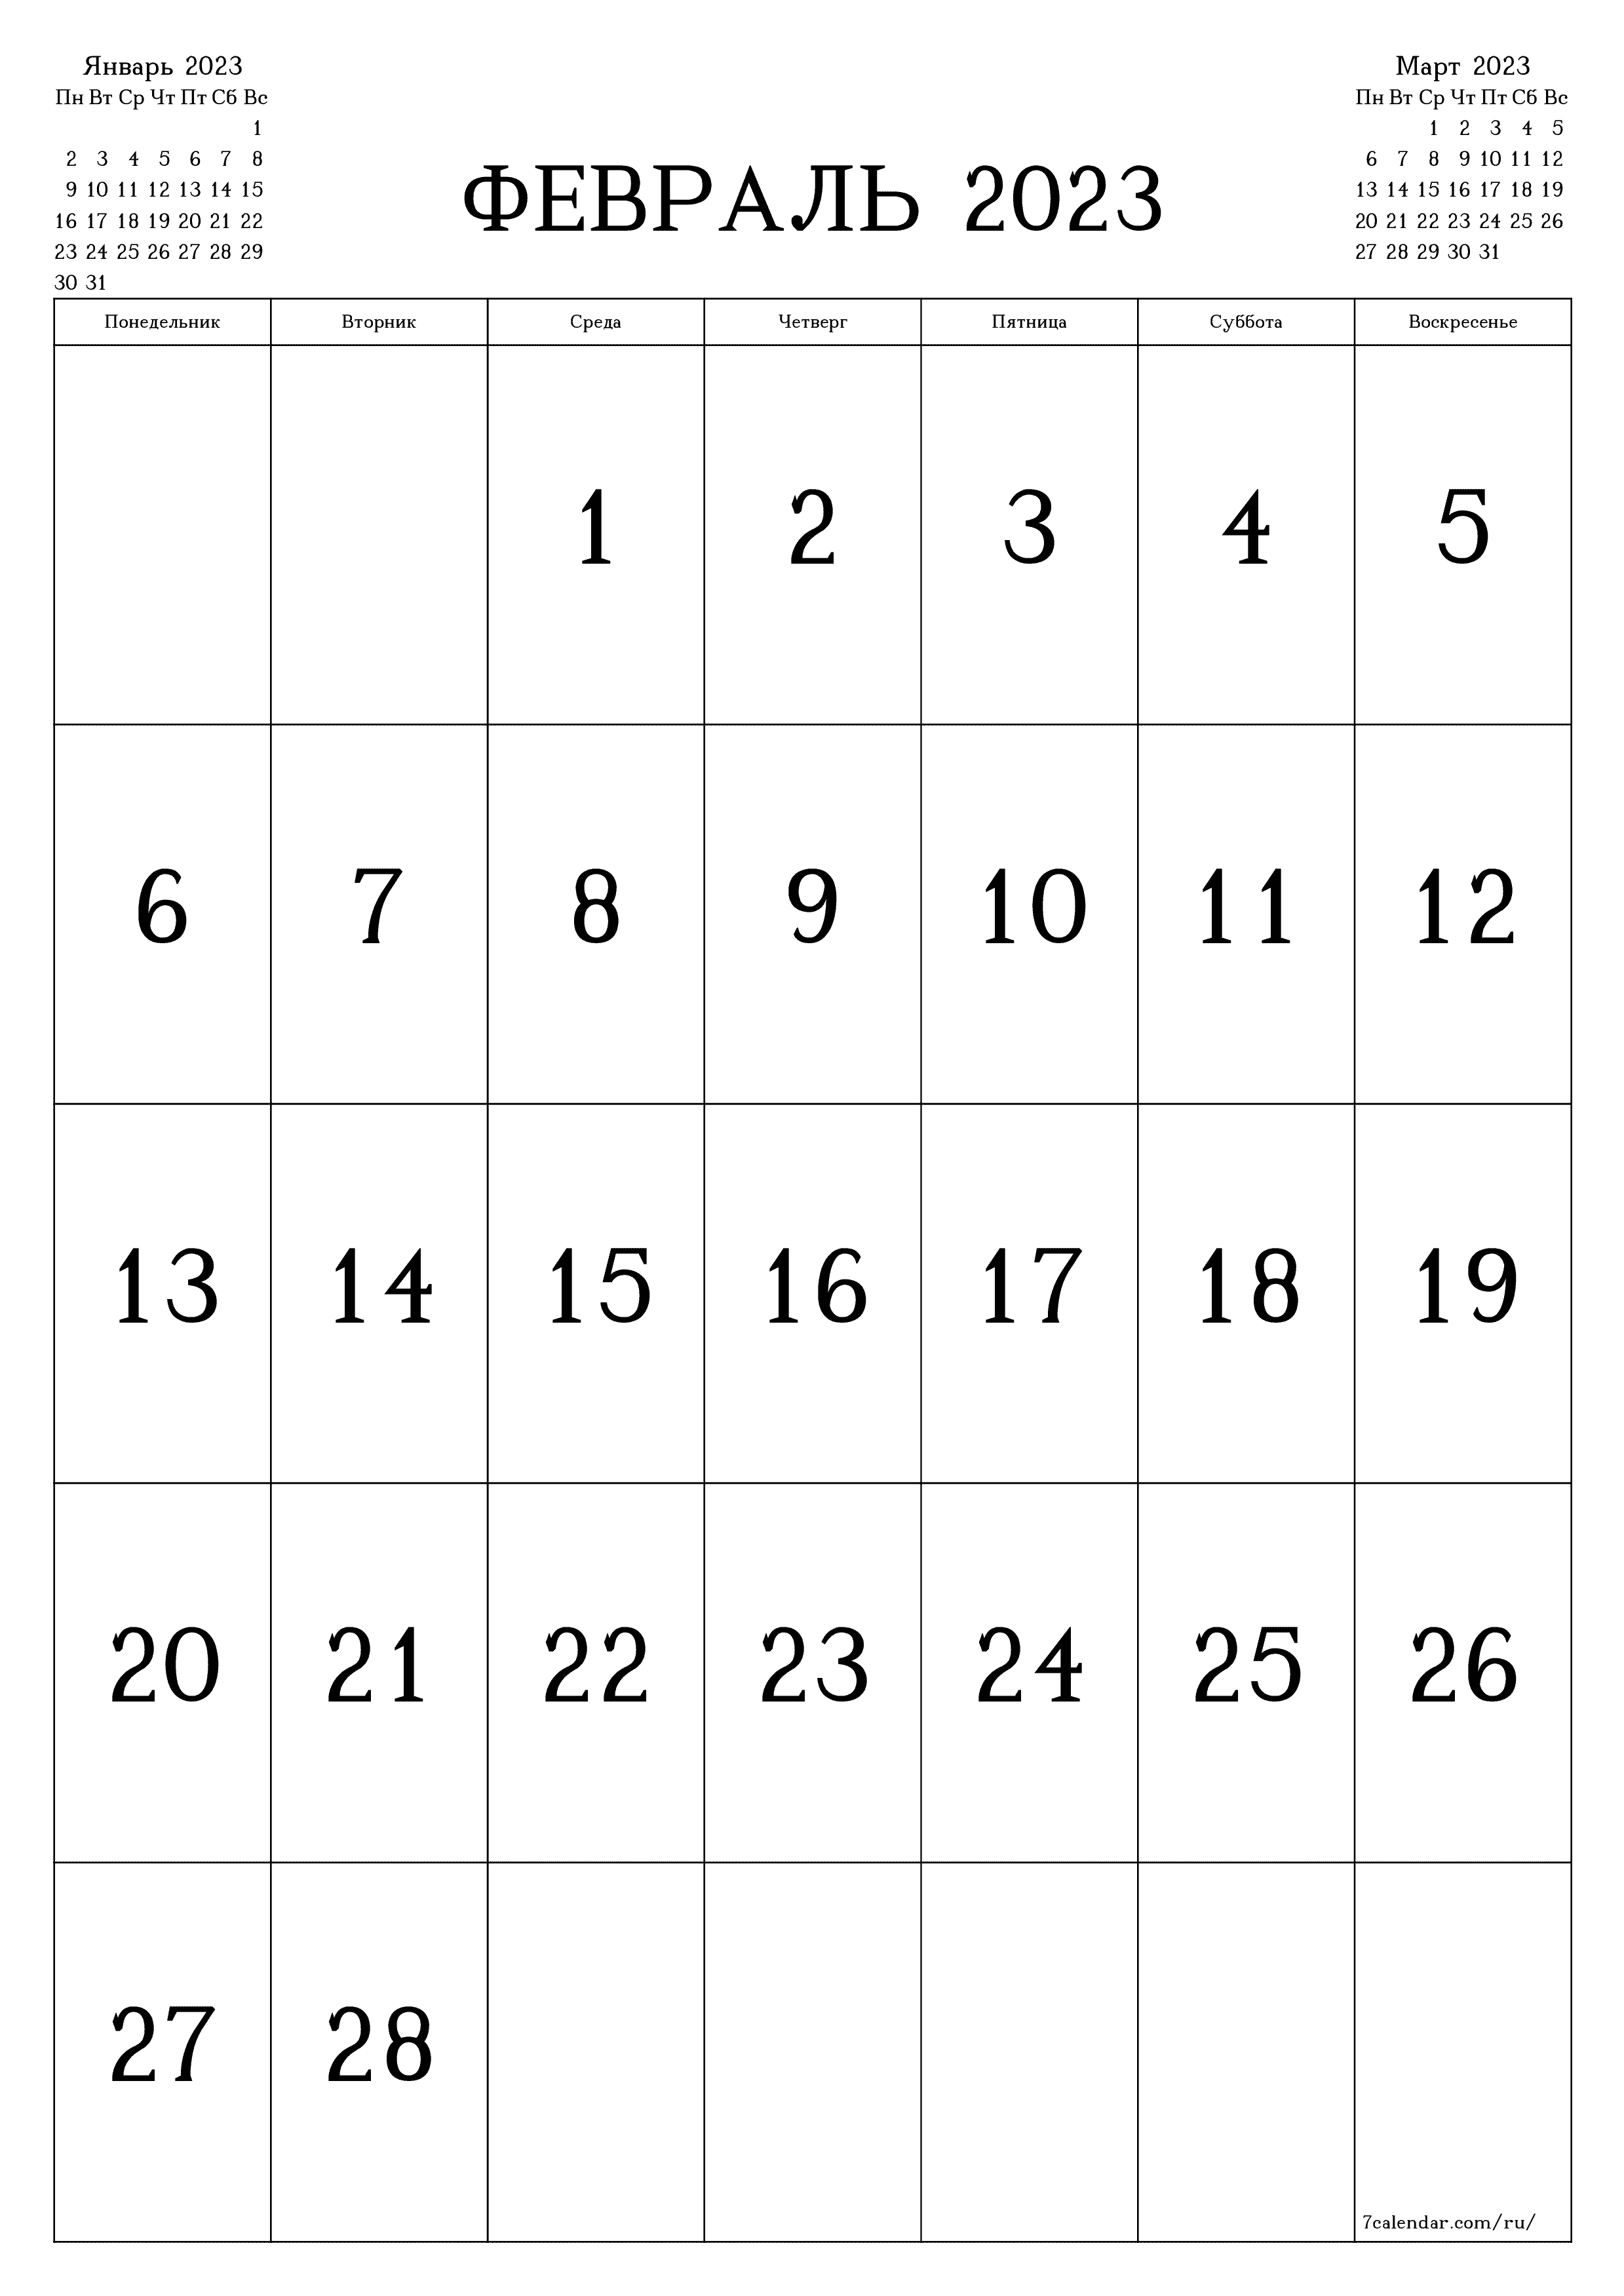 Пустой ежемесячный календарь-планер на месяц Февраль 2023